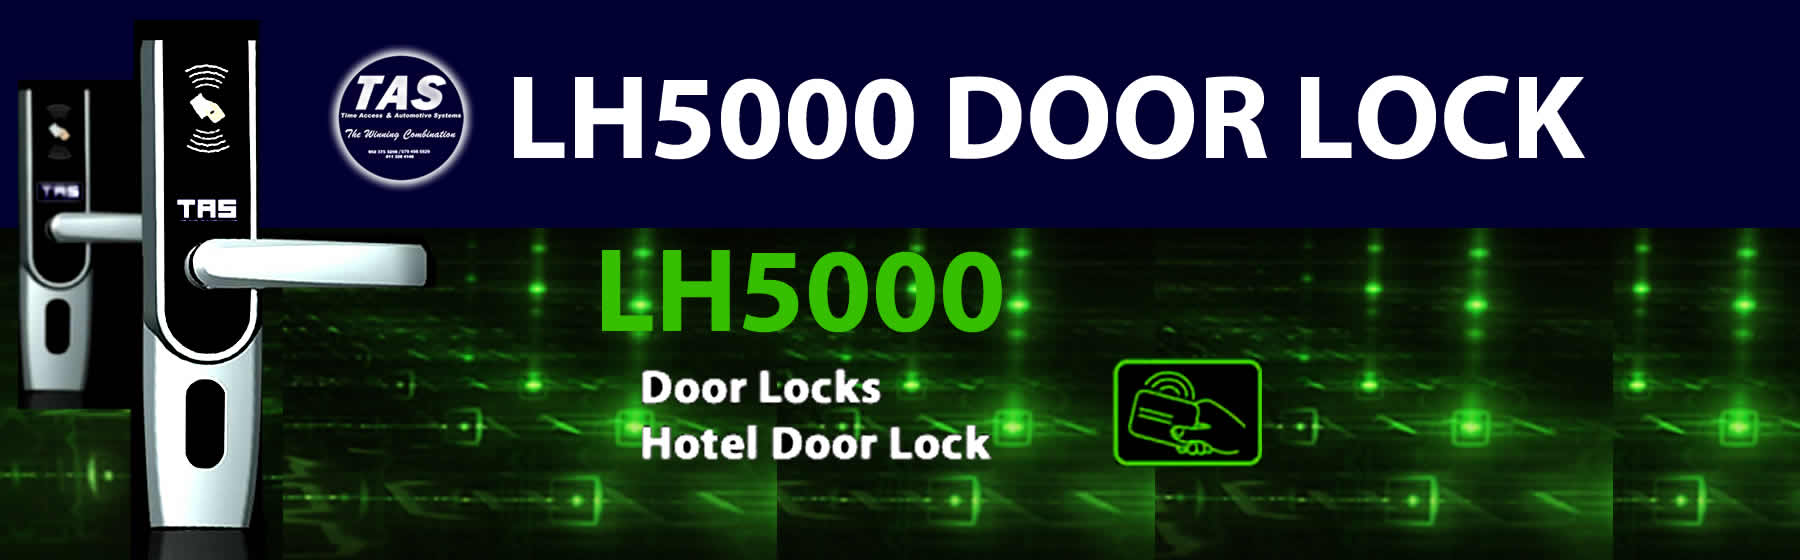 hl4000 door locks banner